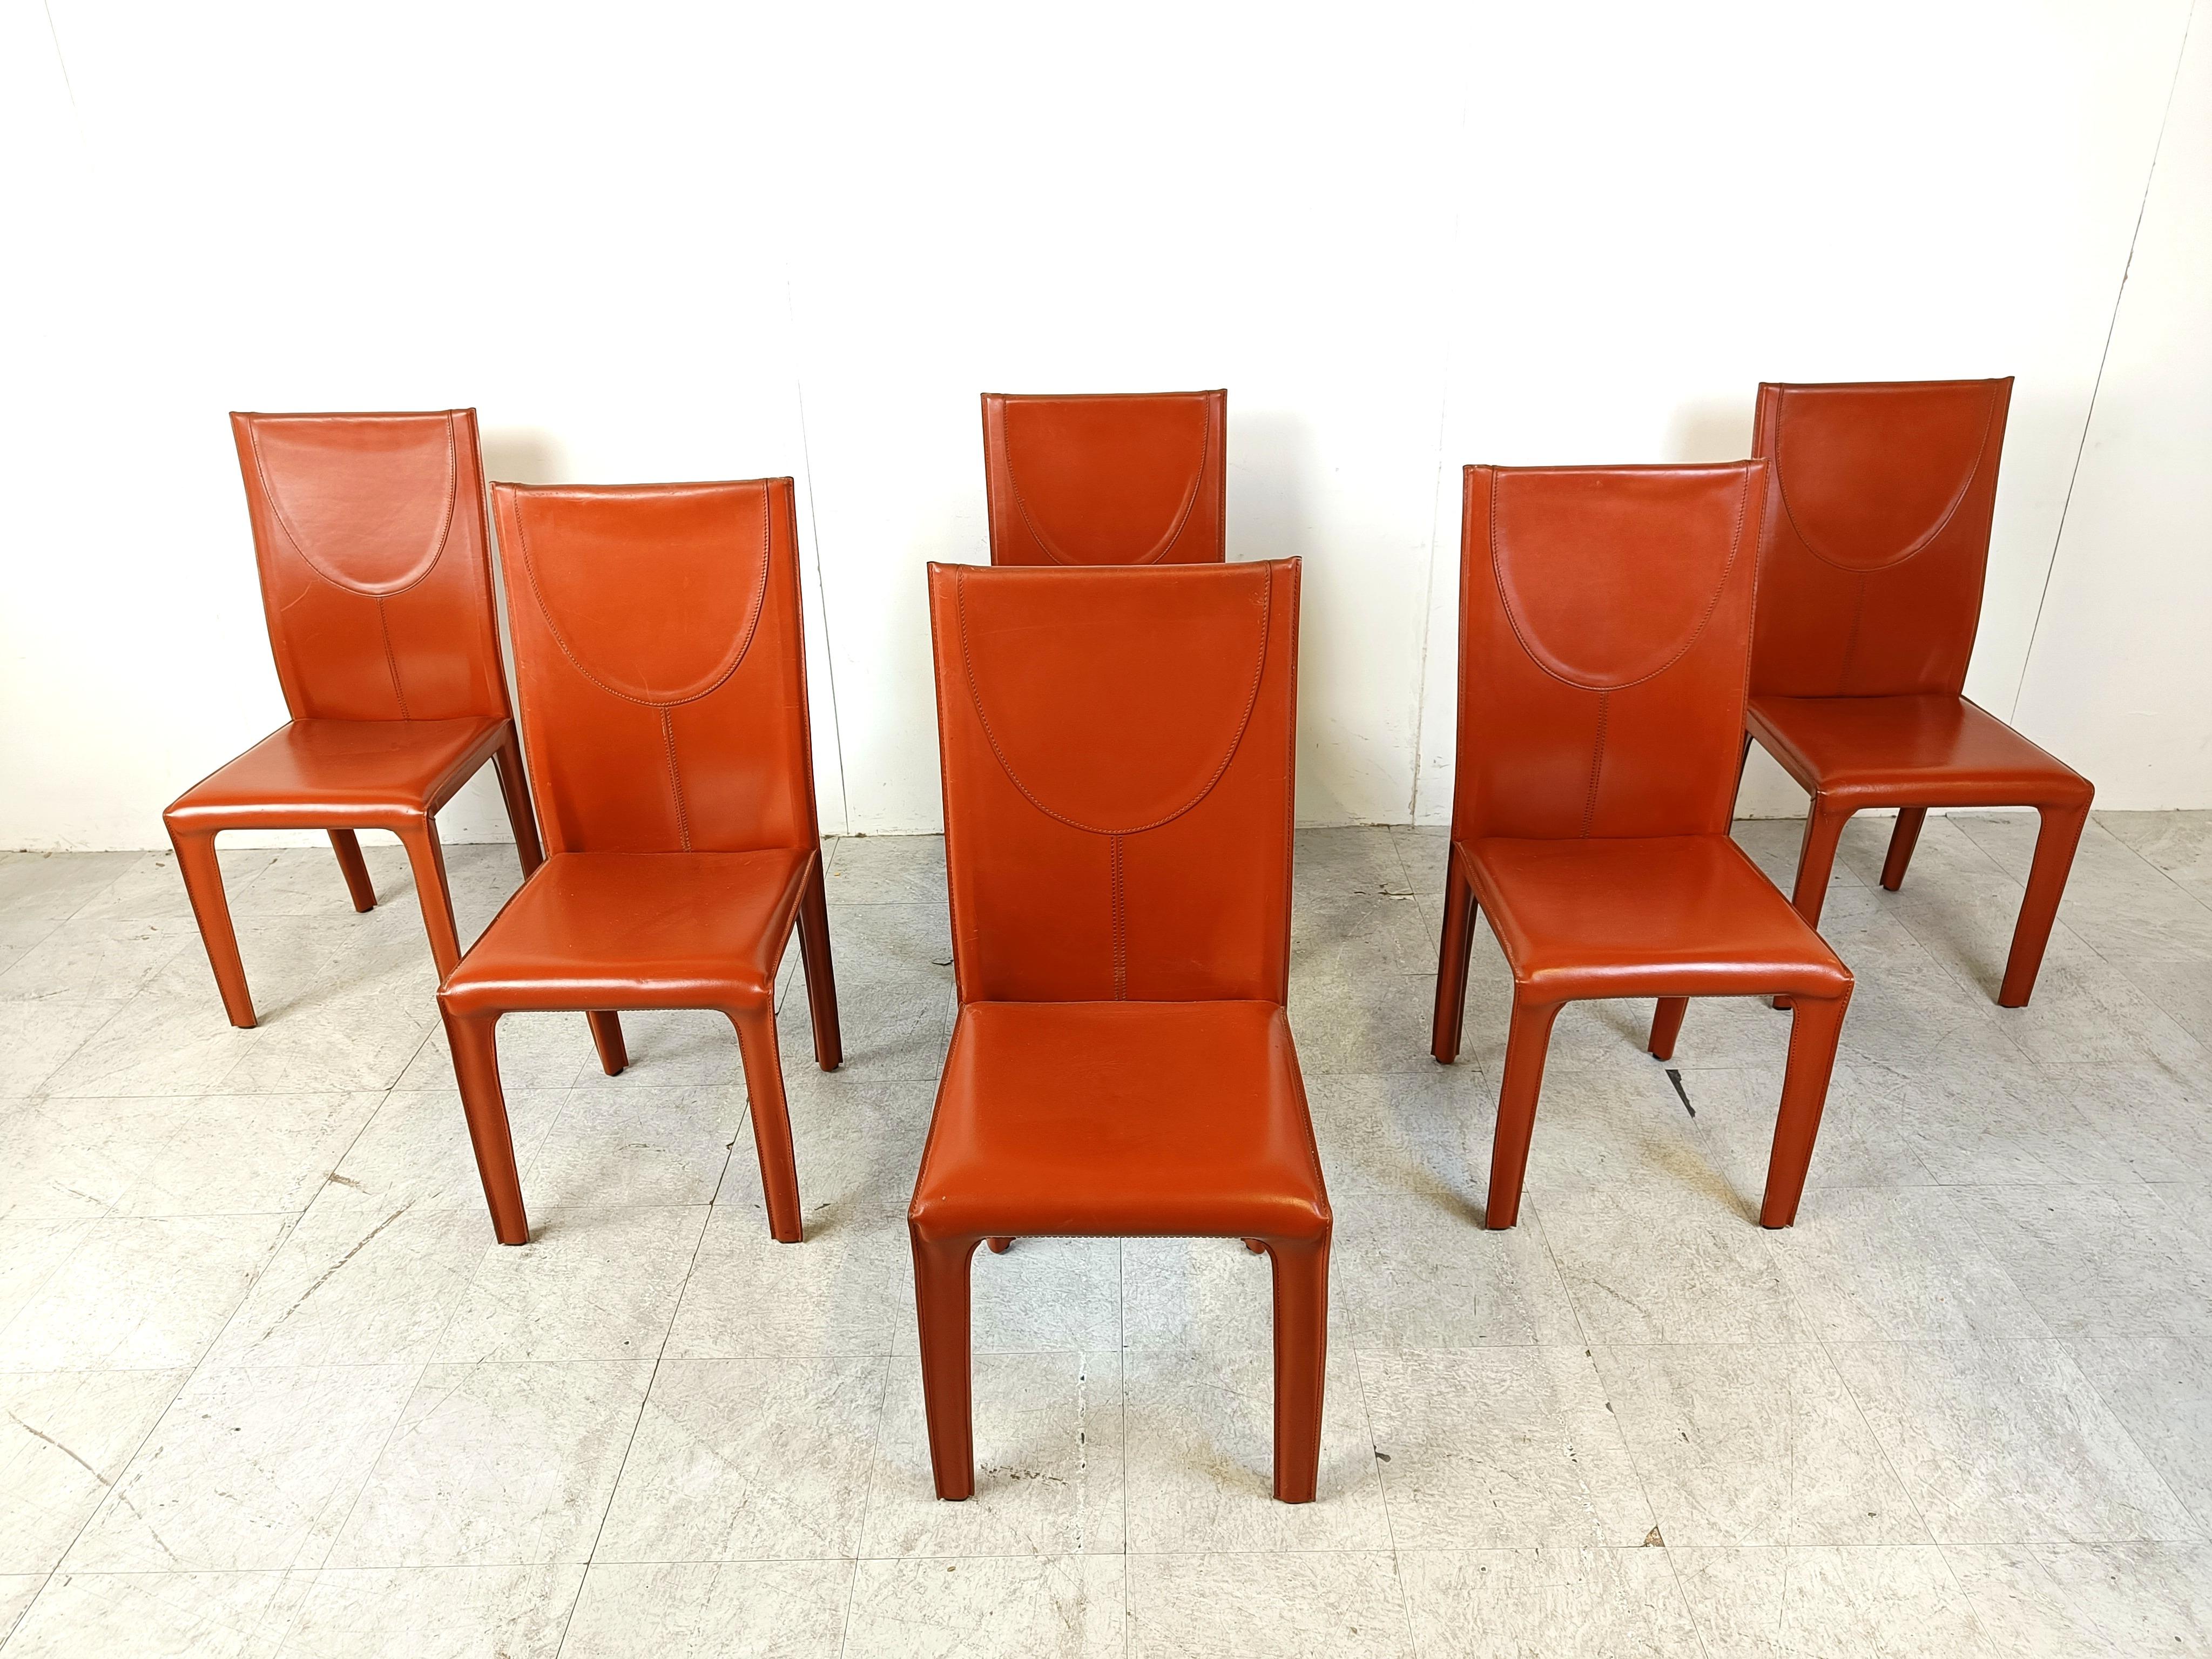 6 Stühle aus rotem genähtem Leder von Arper Italy.

Sehr robuste und zeitlose Design-Stühle.

Guter Zustand mit normalen altersbedingten Gebrauchsspuren

1980er Jahre - Italien

Abmessungen:
Höhe: 100cm
Breite x Tiefe: 45cm
Sitz  Höhe: 45 cm

Der